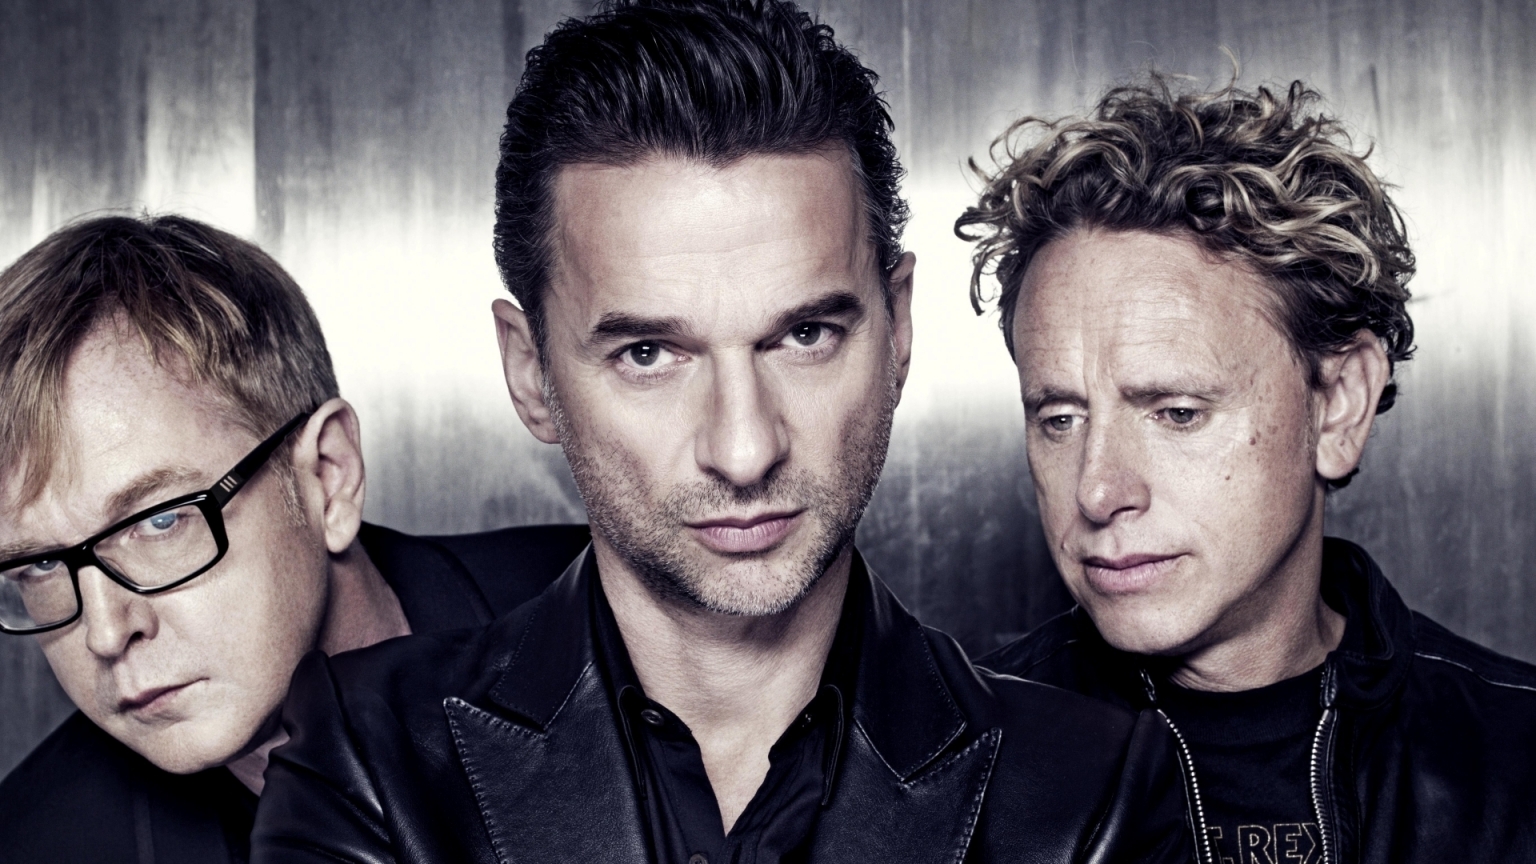 Depeche Mode Poster for 1536 x 864 HDTV resolution